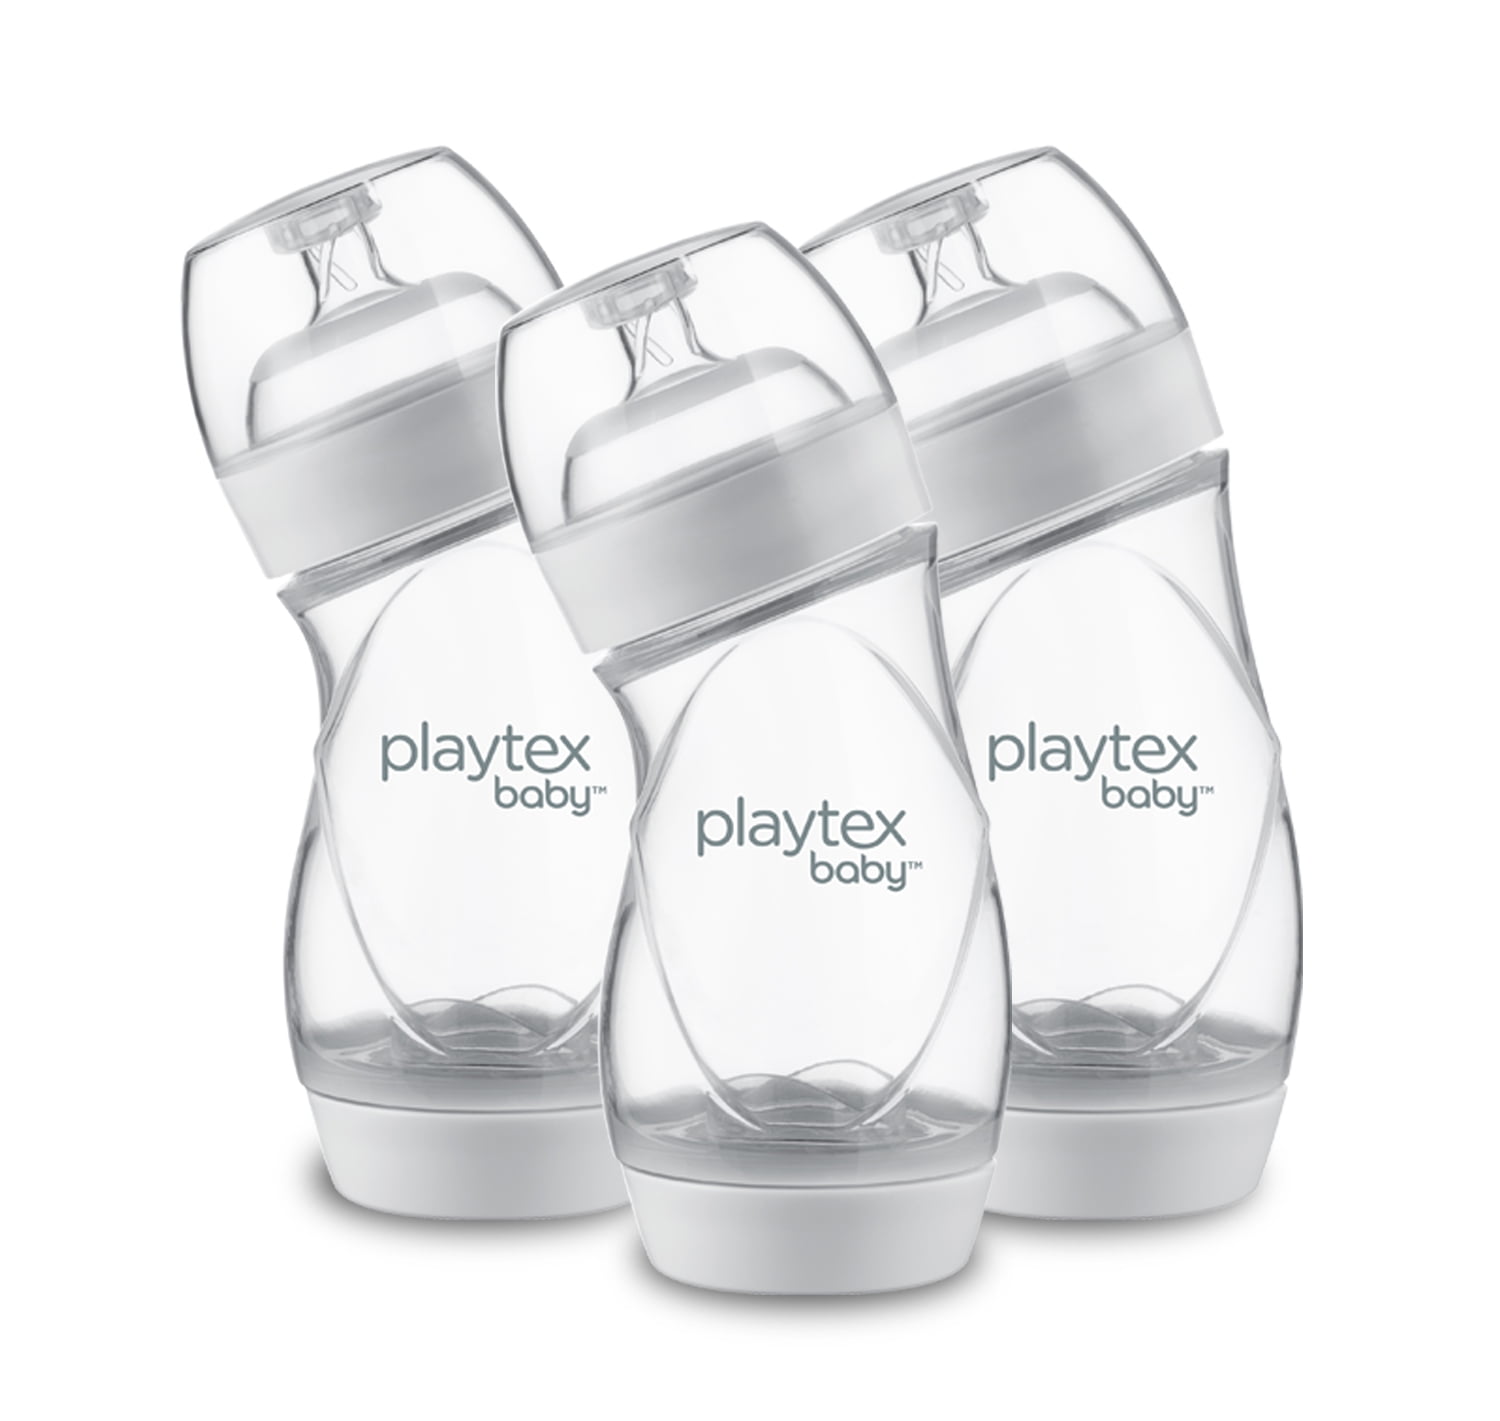 Playtex Ventaire Bottles review - Playtex Bottle Feeding - Bottles